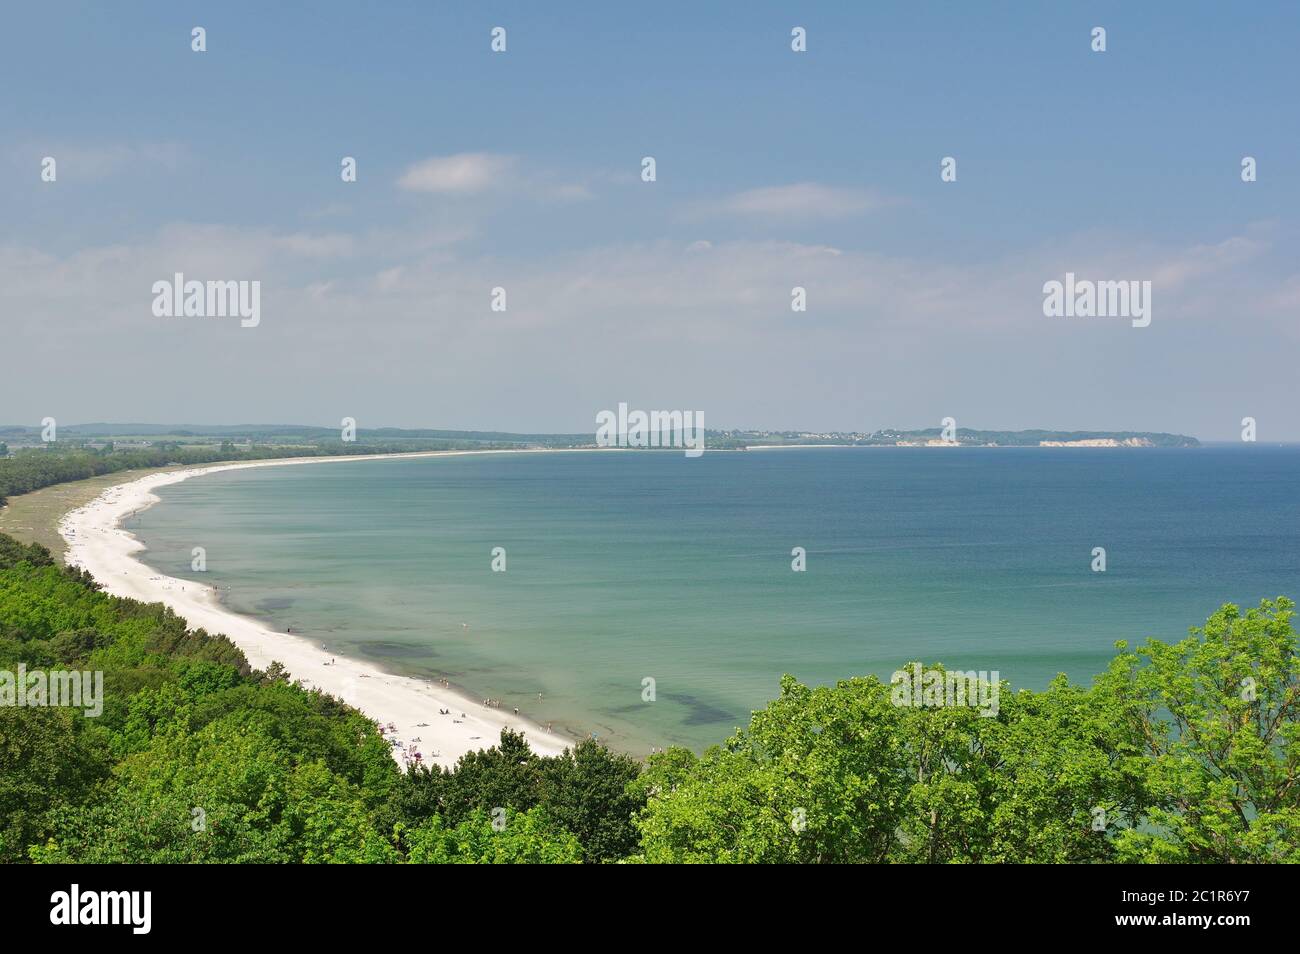 Sur la plage de sable de Thiessow, sur la horion : la ligne de falaise de Göhren, île de Rügen, Mönchgut, Allemagne, Europe de l'Ouest Banque D'Images